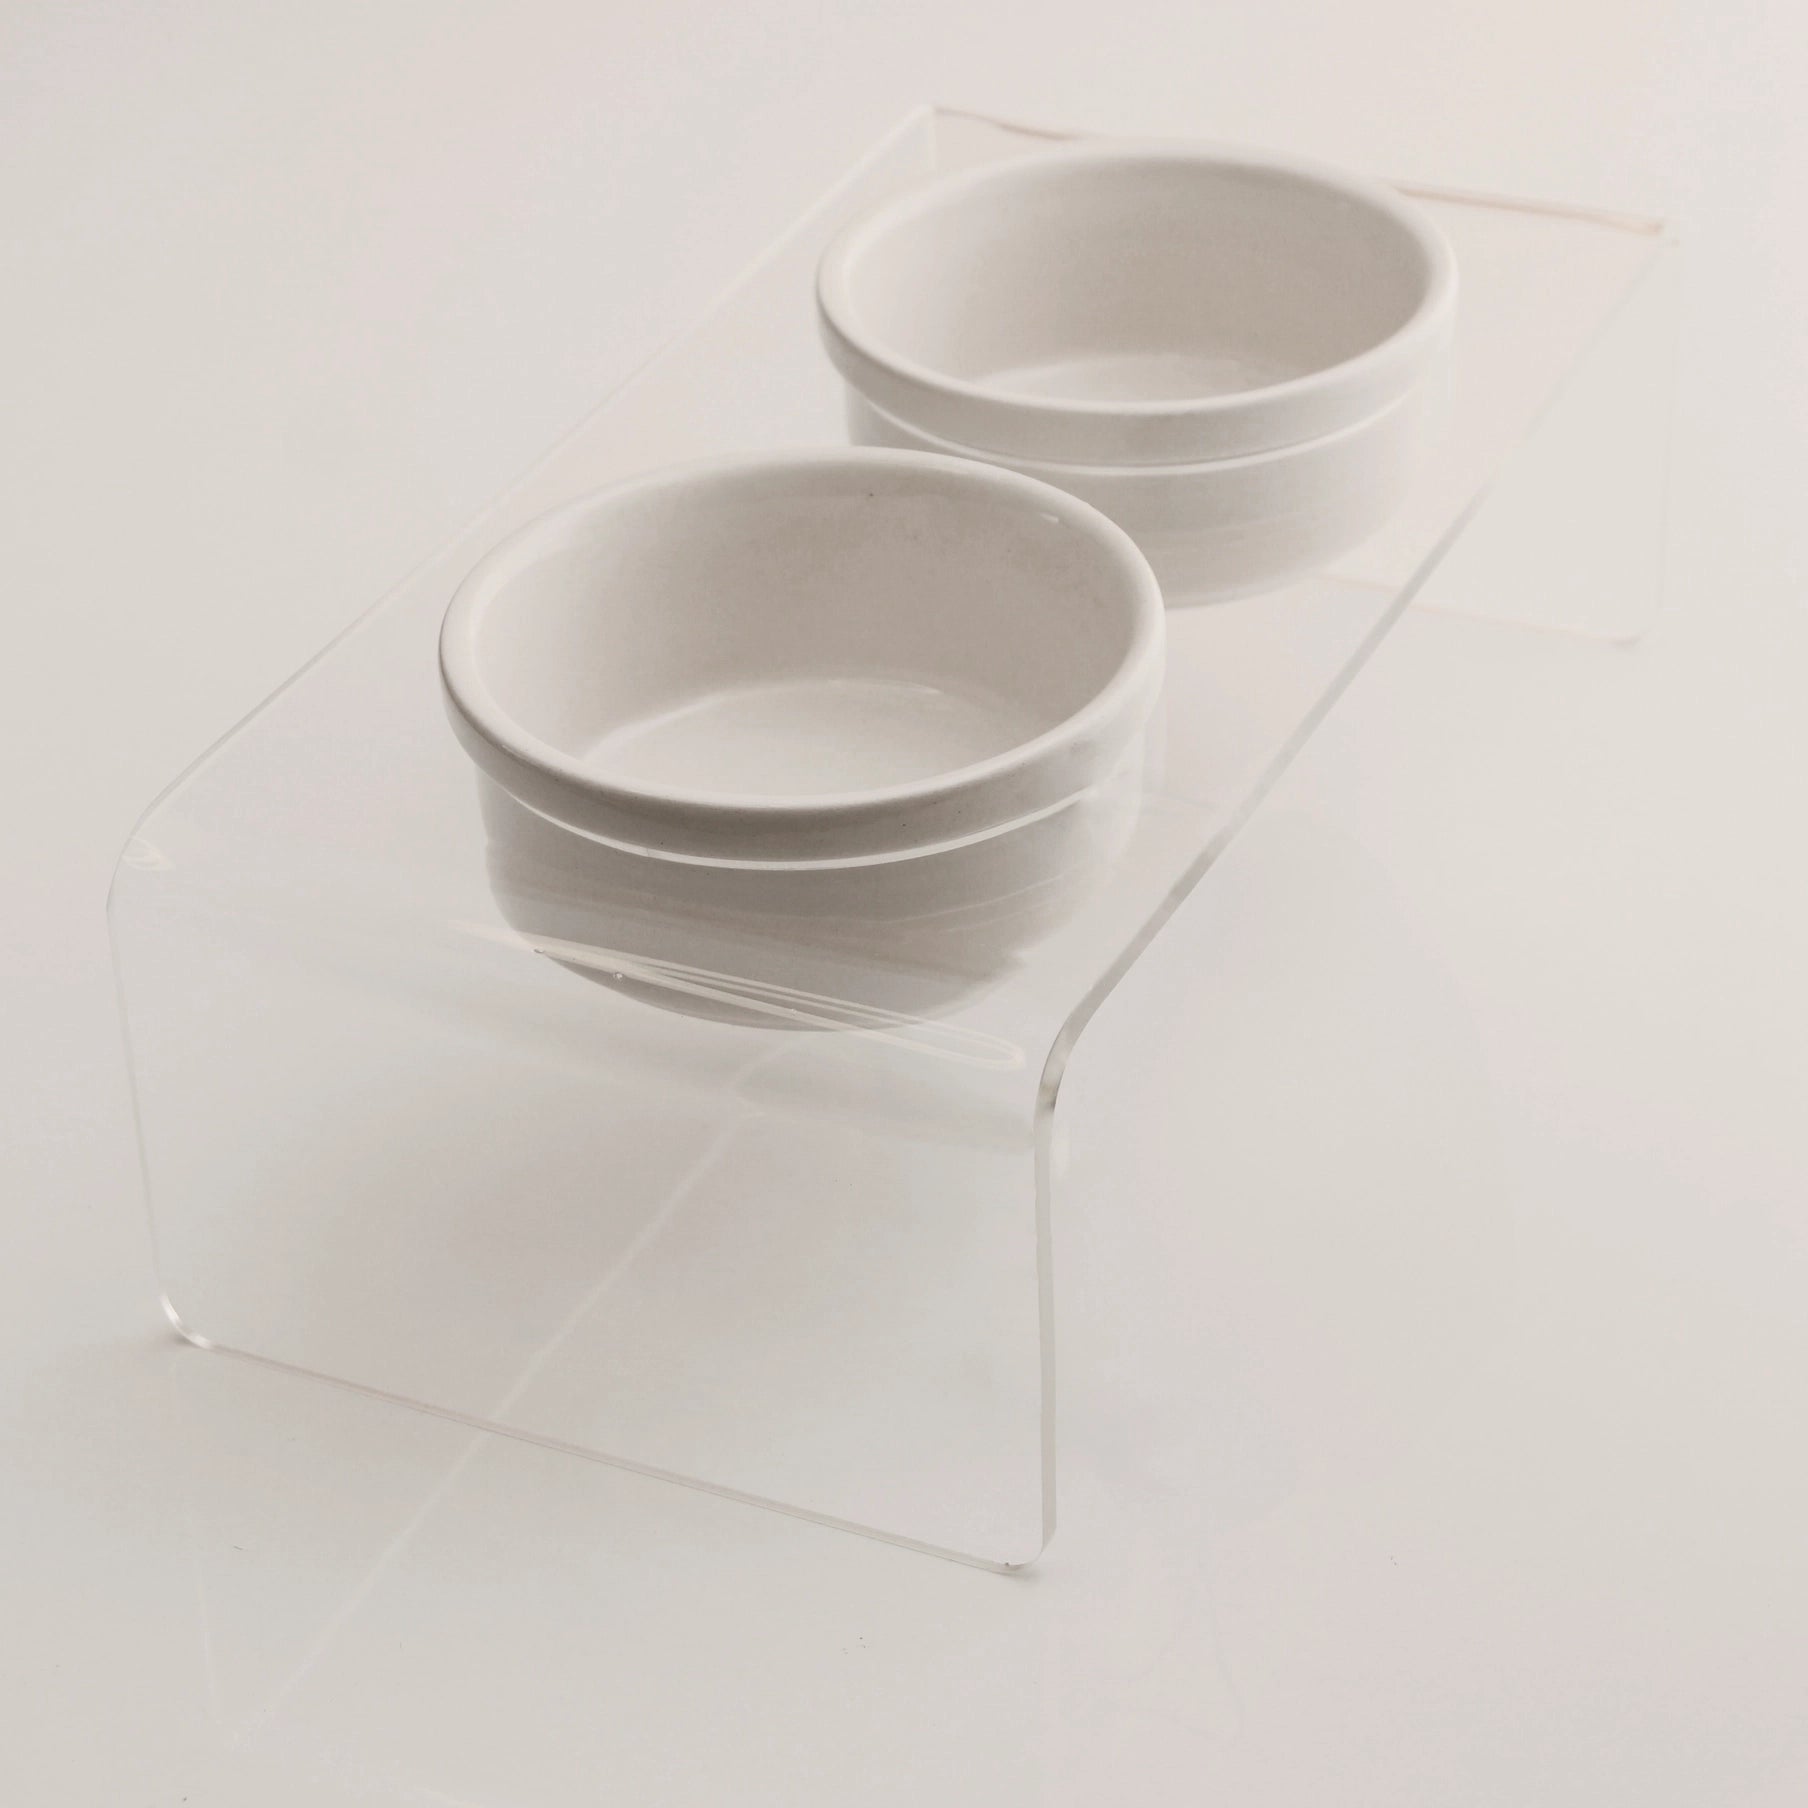 Doppelte Plexiglas-Keramik-Fütterungsstation